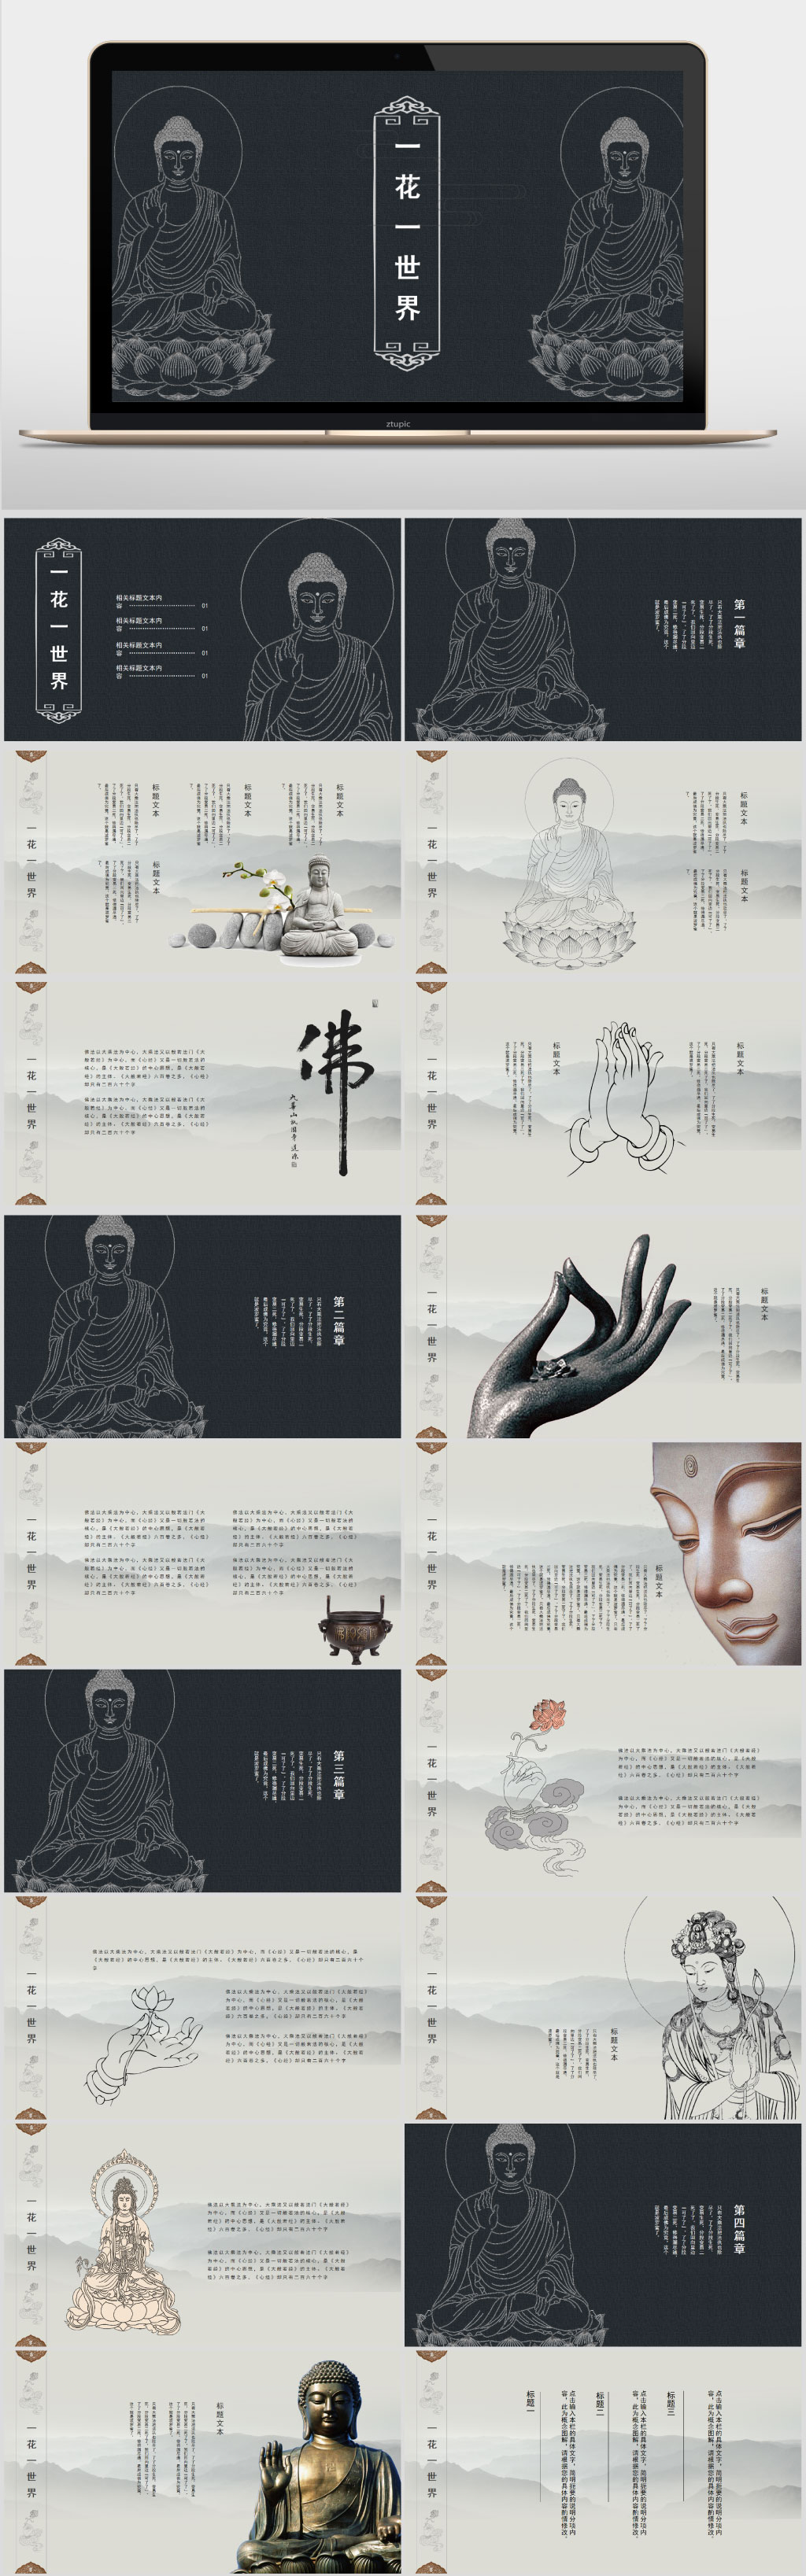 佛教文化ppt模板素材图片